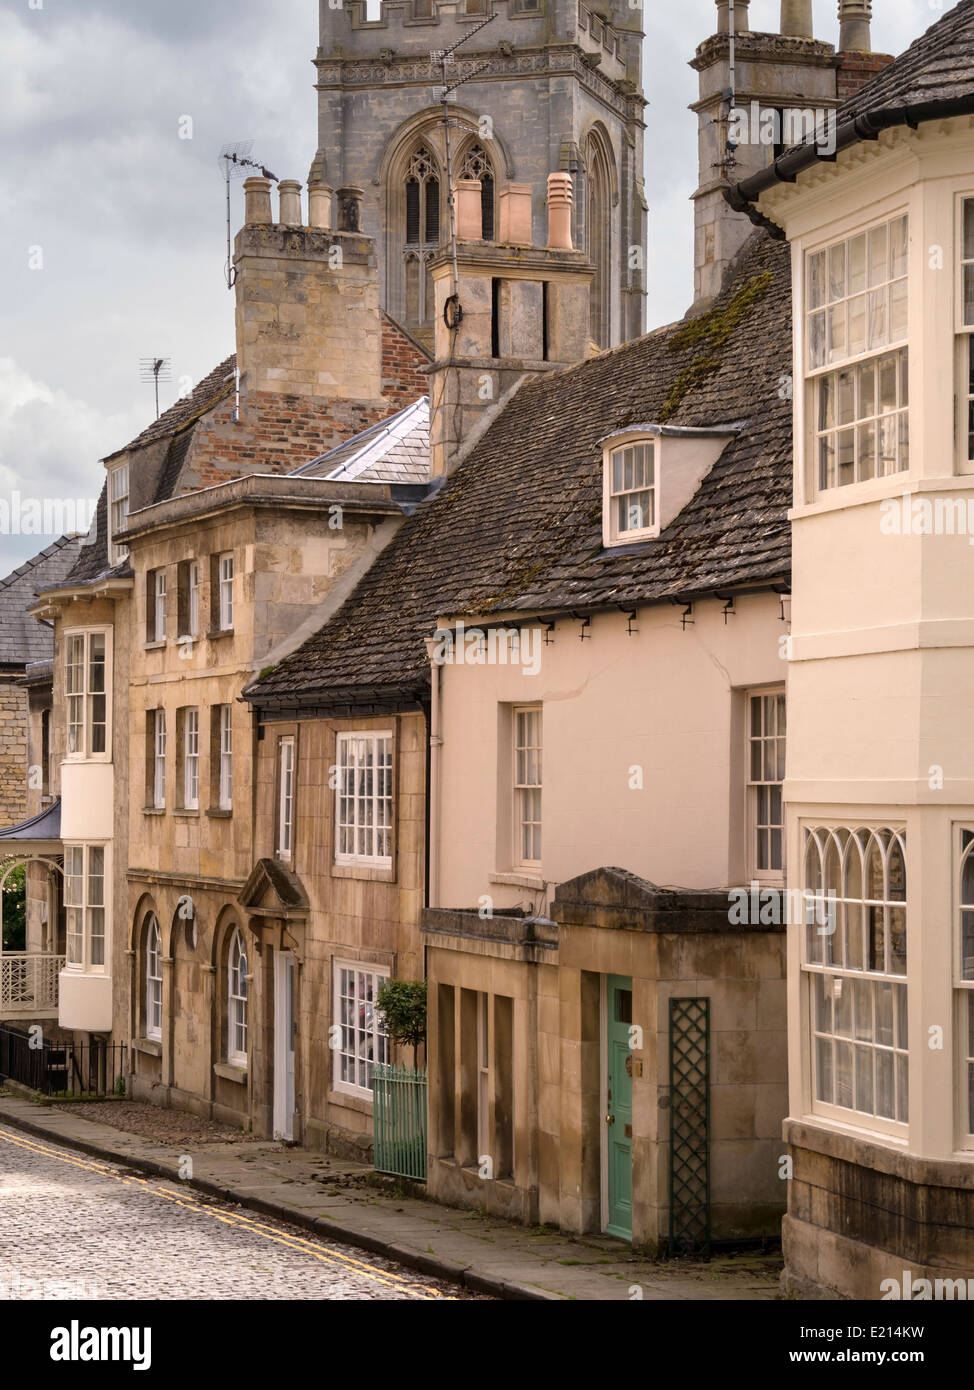 Vieille rue pavées étroites avec des maisons en pierre, Grange Hill et de tous les Saints,lieu,Stamford Lincolnshire, Angleterre, Royaume-Uni Banque D'Images